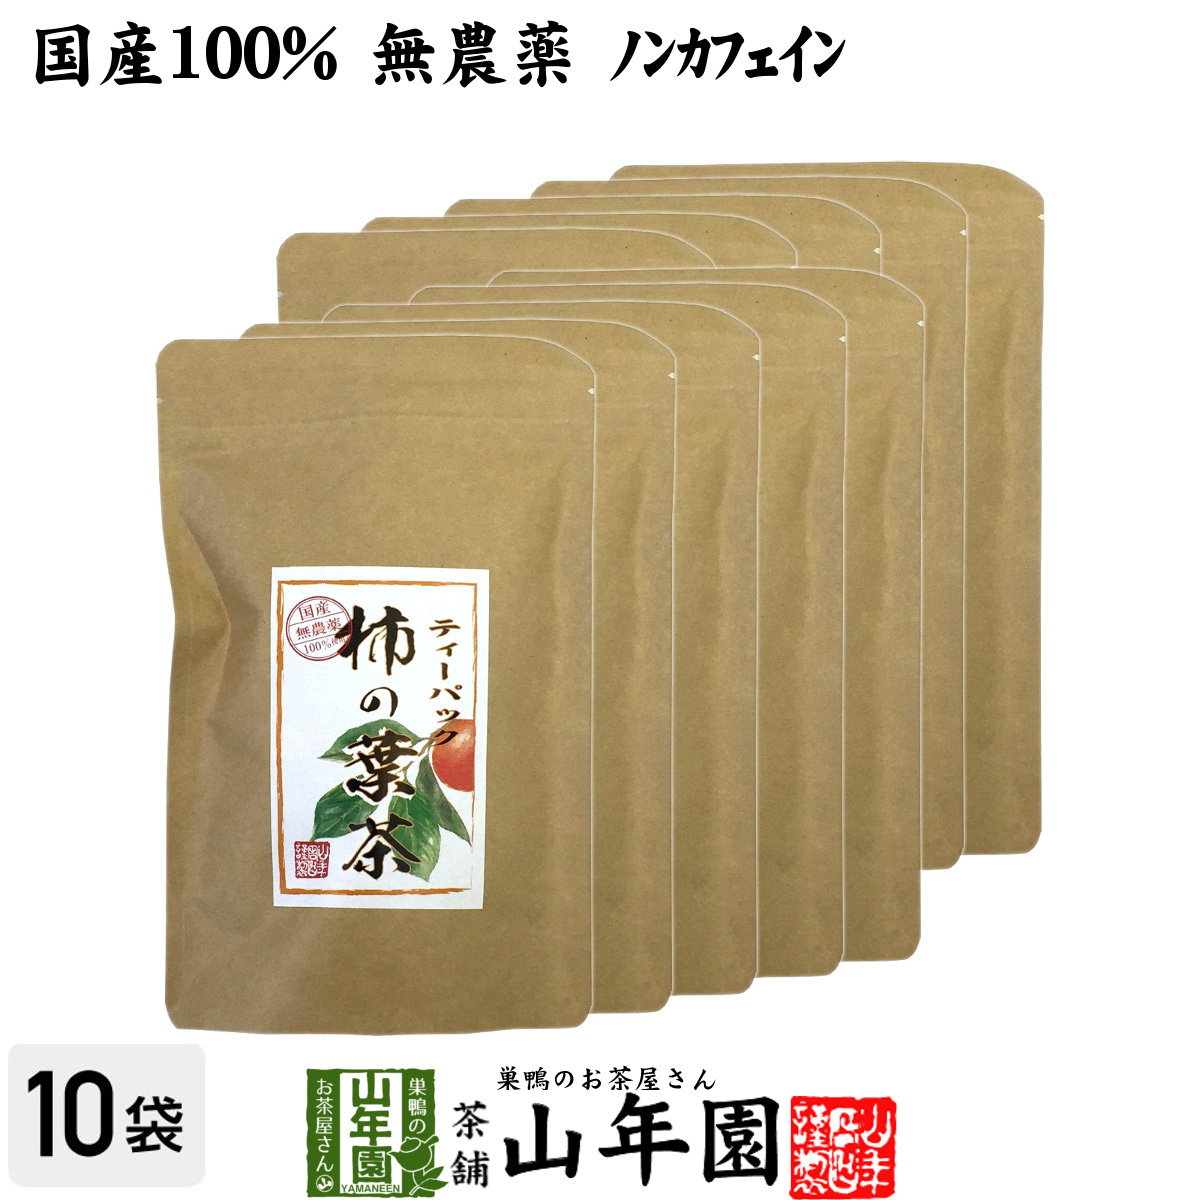 健康茶 柿の葉茶 30g(1.5g×20パック)×10袋セット 国産無農薬 鹿児島県産 ノンカフェイン 送料無料